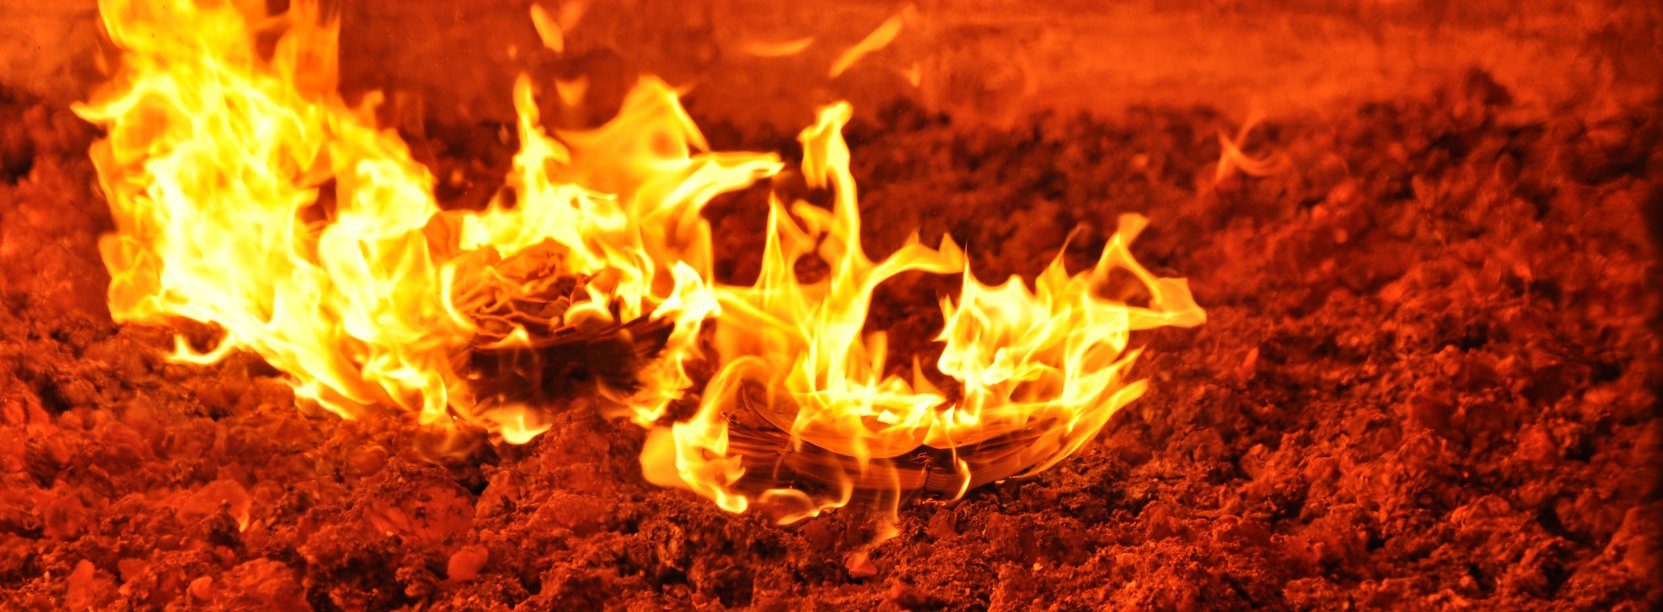 Ogień palący się wewnątrz rozgrzanego do czerwoności pieca